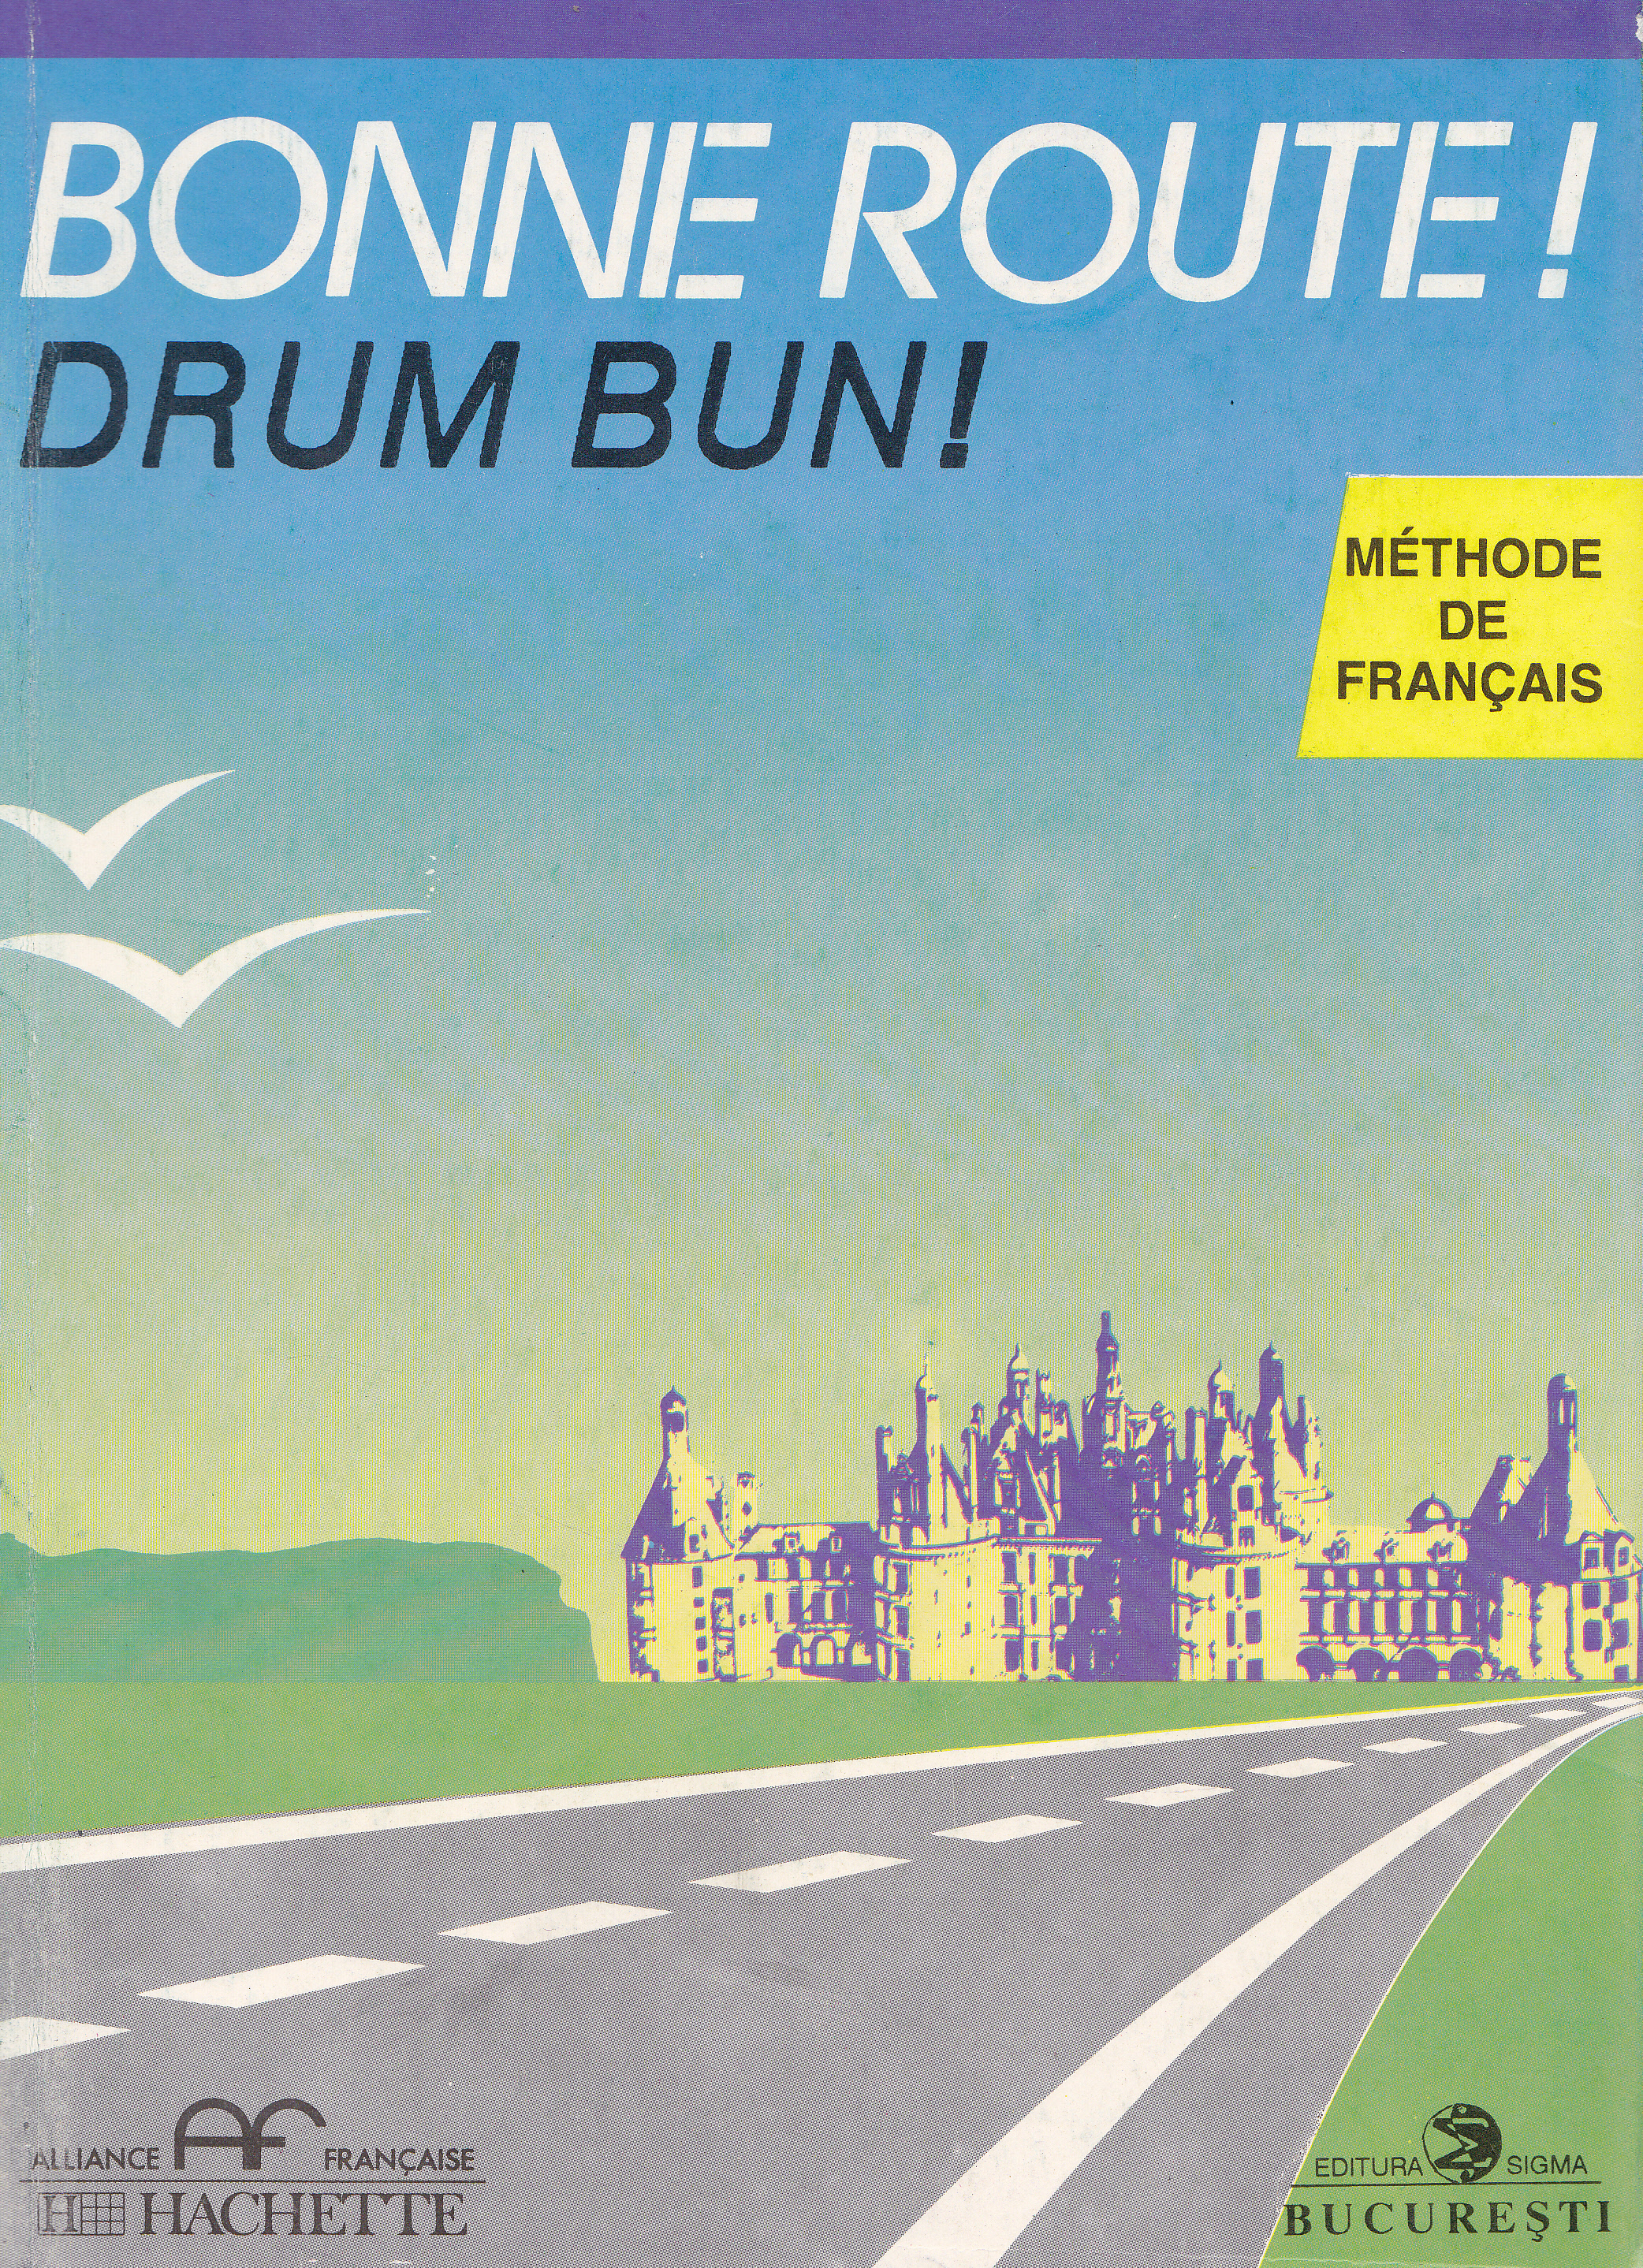 Bonne route! Drum bun! vol 2 - 28 lectii - Methode de francais - Hachette - Pierre Gibert, Philippe Greffet